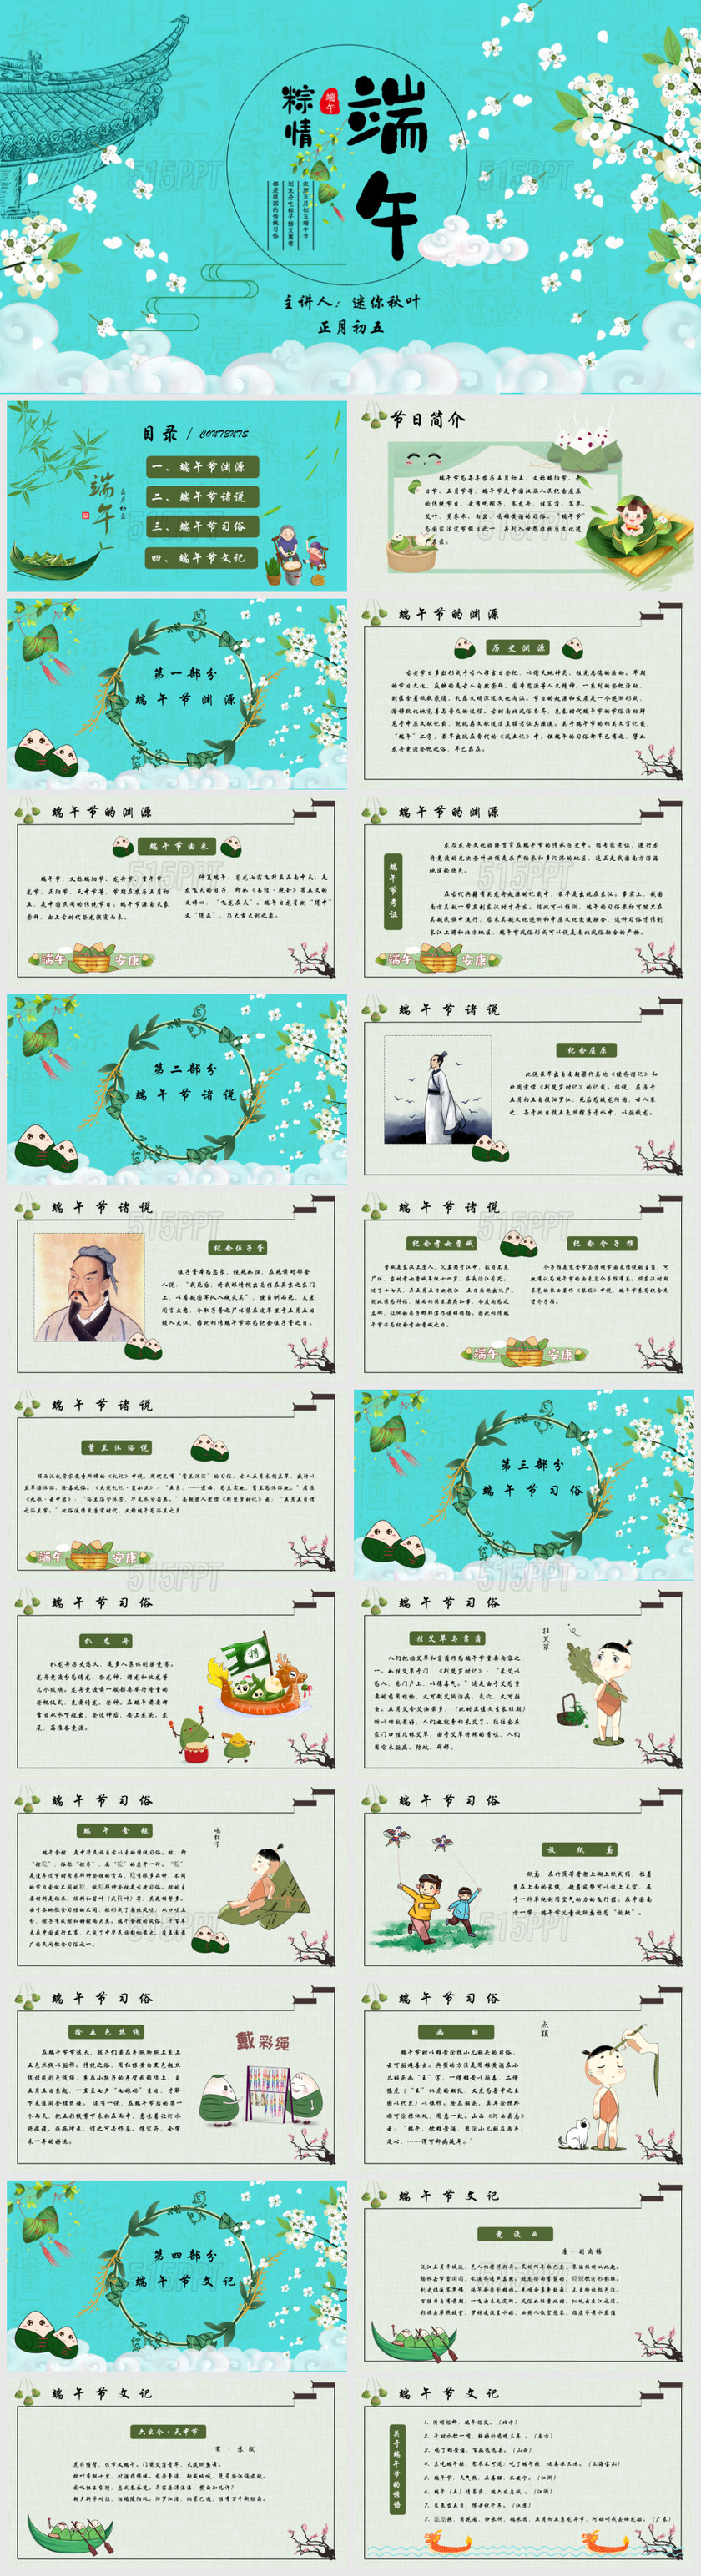 蓝绿色中国风端午节文化介绍主题班会ppt